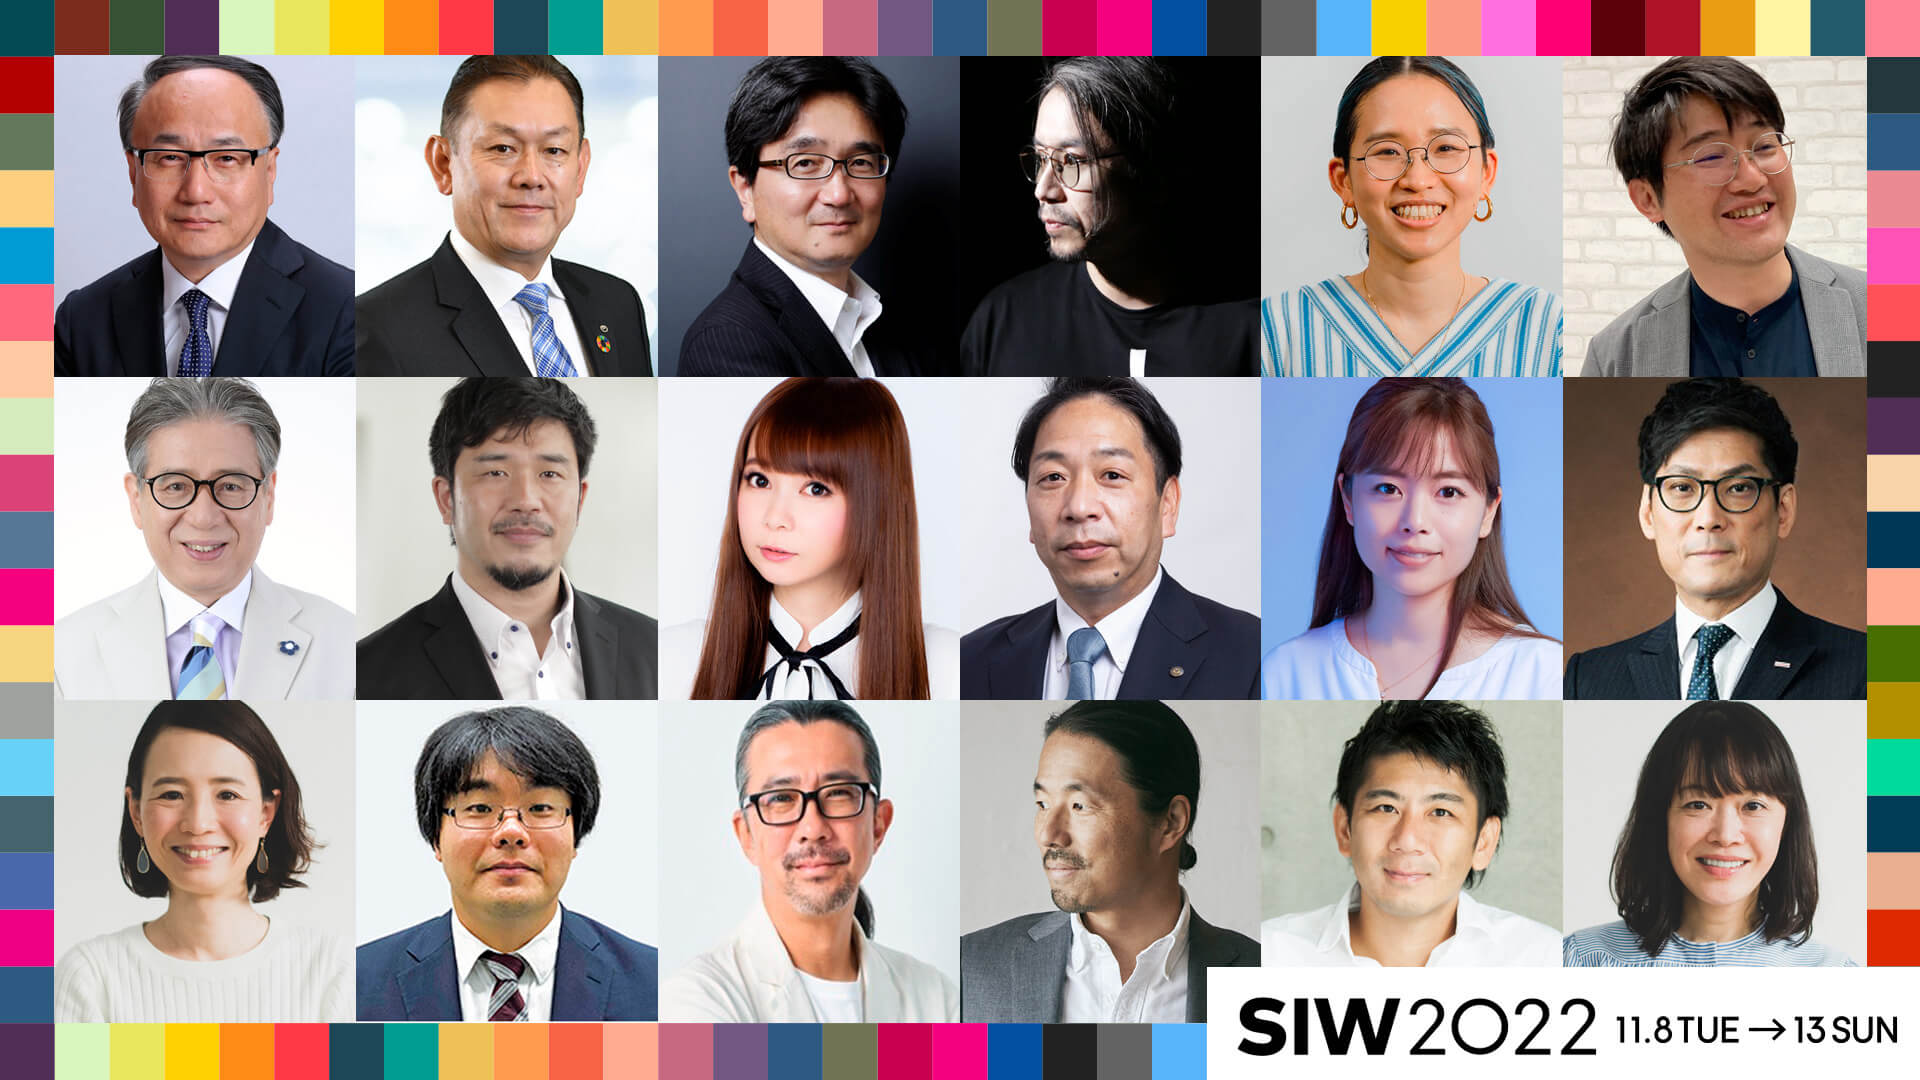 渋谷アイデア会議 SIW Conference DAY2「Beyond Digital NTT IOWN DAY」プログラム発表 art221019-social-innovation-week-shibuya-01